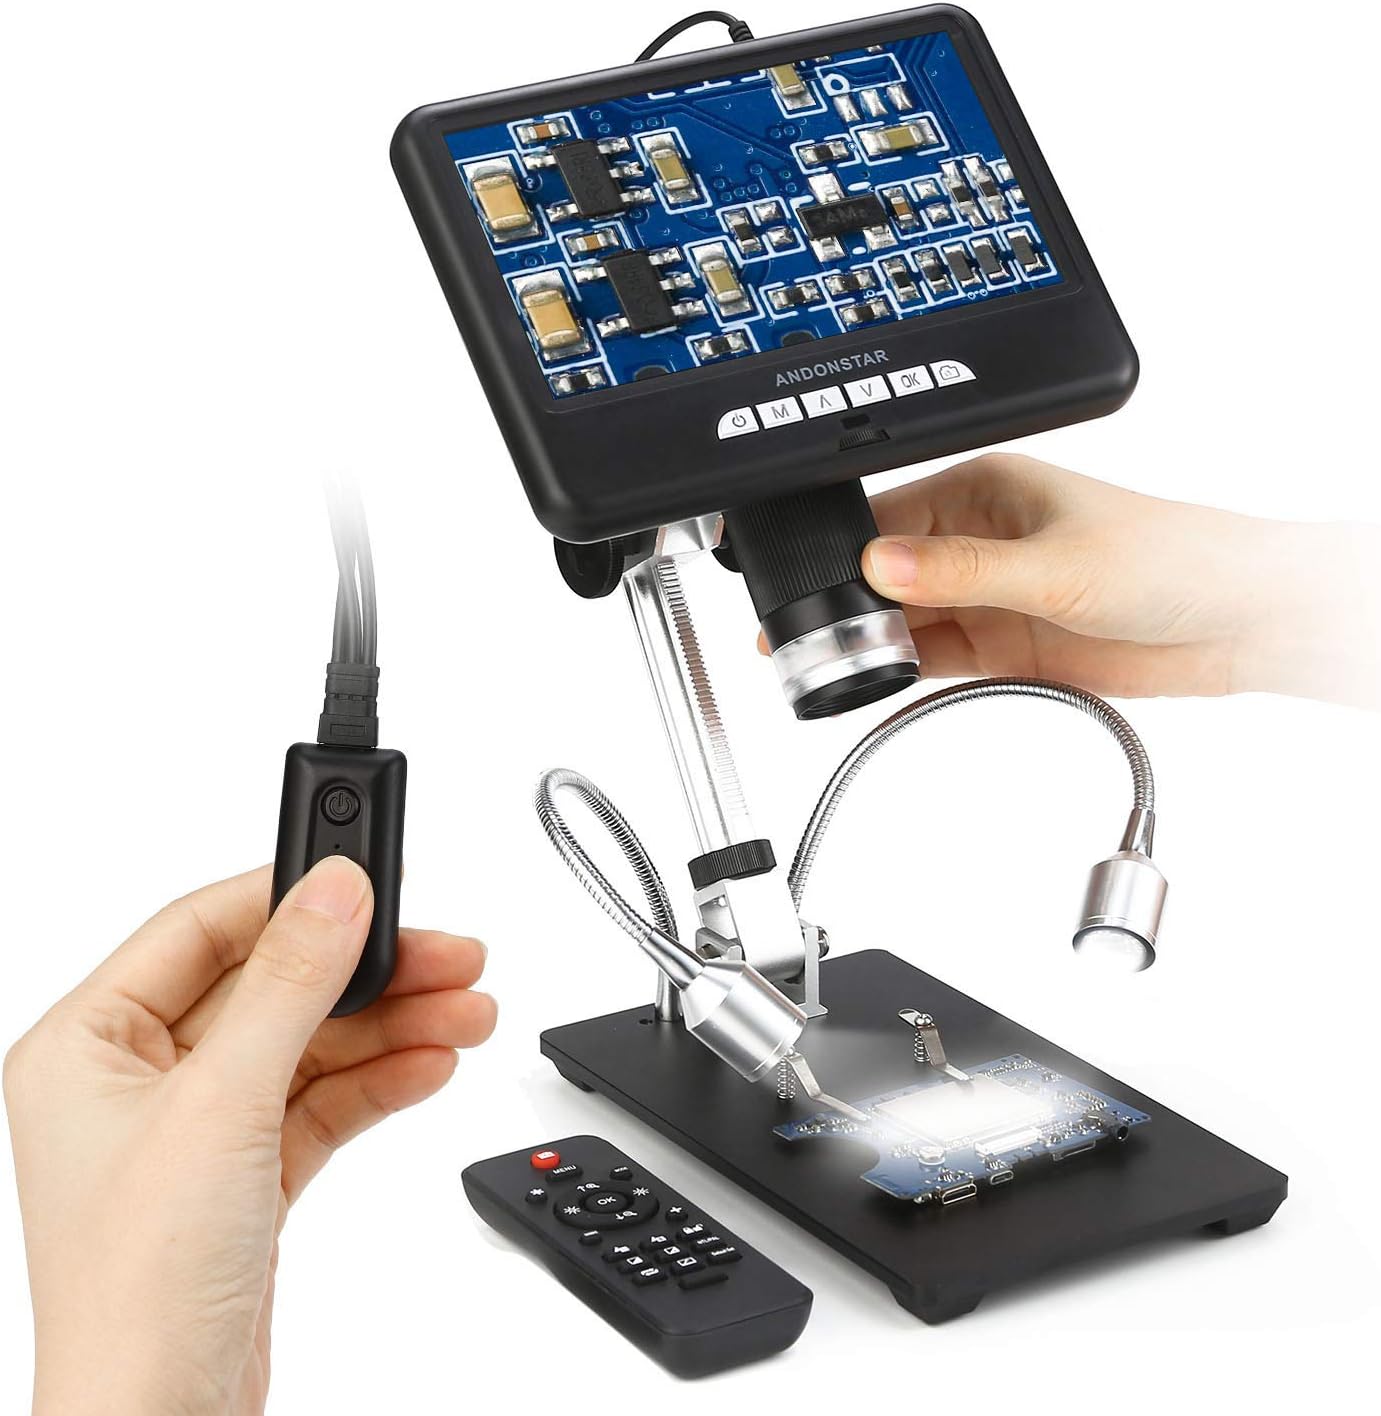 Andonstar AD207 USBデジタル顕微鏡 AD207 7インチLCDディスプレイと3Dビジュアルエフェクト付き 回路基板修理サービングツール